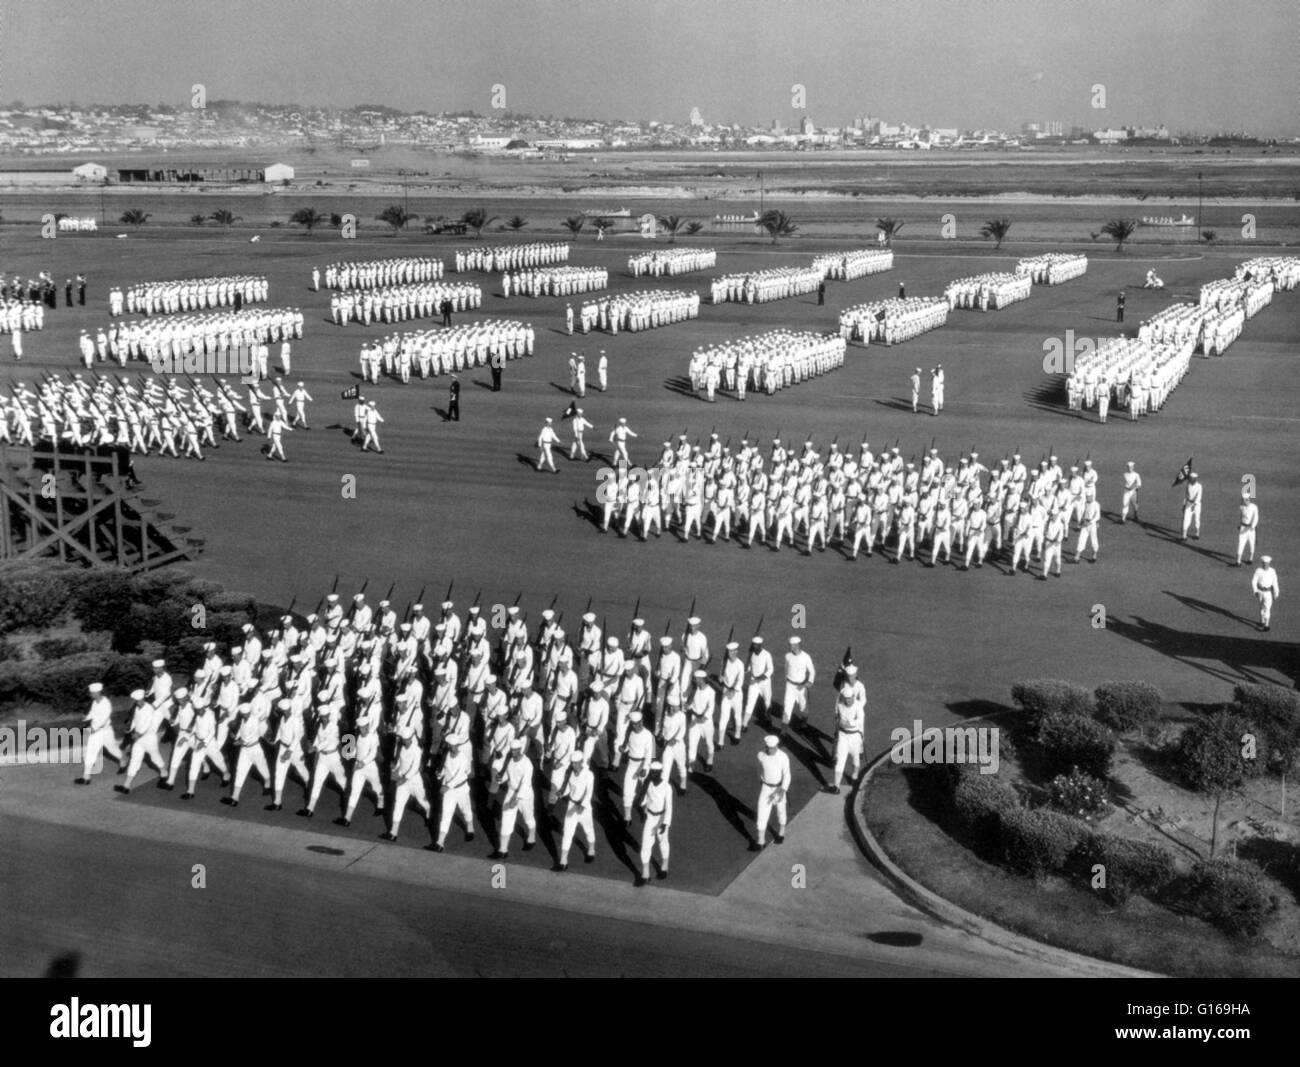 United States Naval Training Center, San Diego, Californie, fin des années 40. Un défilé militaire est une formation de soldats dont le mouvement est limité par des manoeuvres de commande appelé drilling, formation, en marchant, ou l'examen militaire .Le United States Nav Banque D'Images